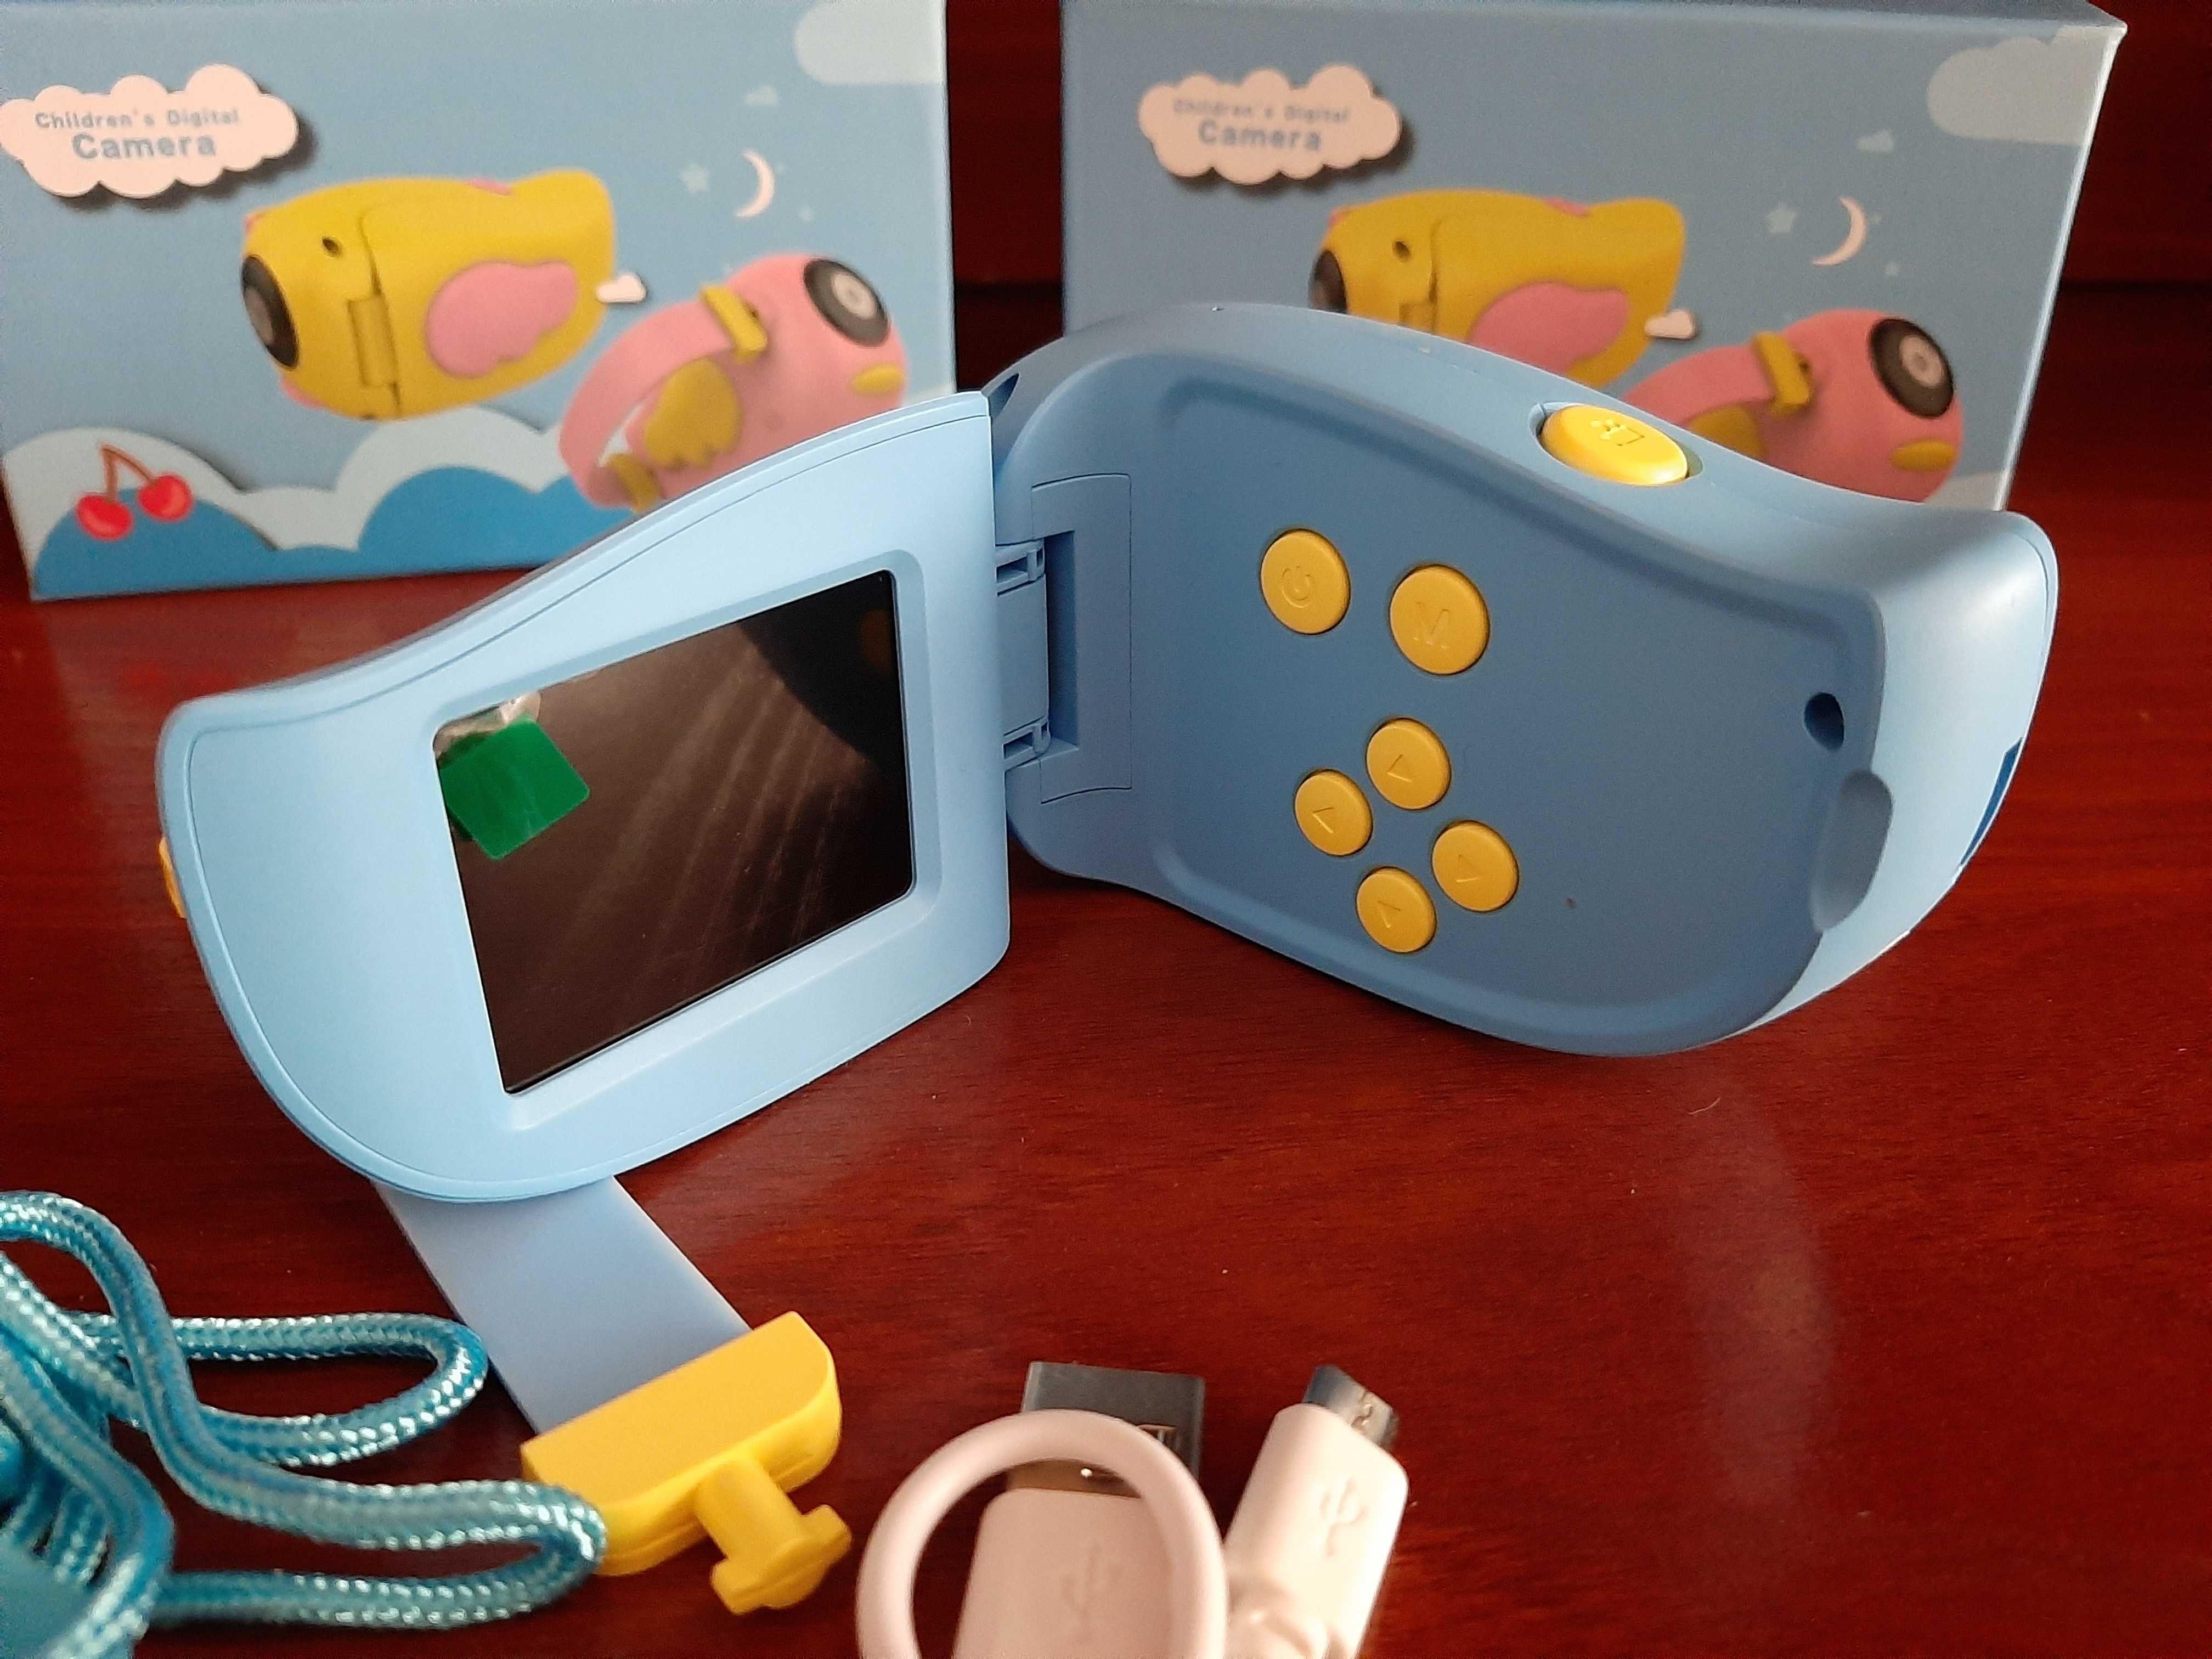 Детская видеокамера! Фото, видеосъемка, диктофон + рамки и игры